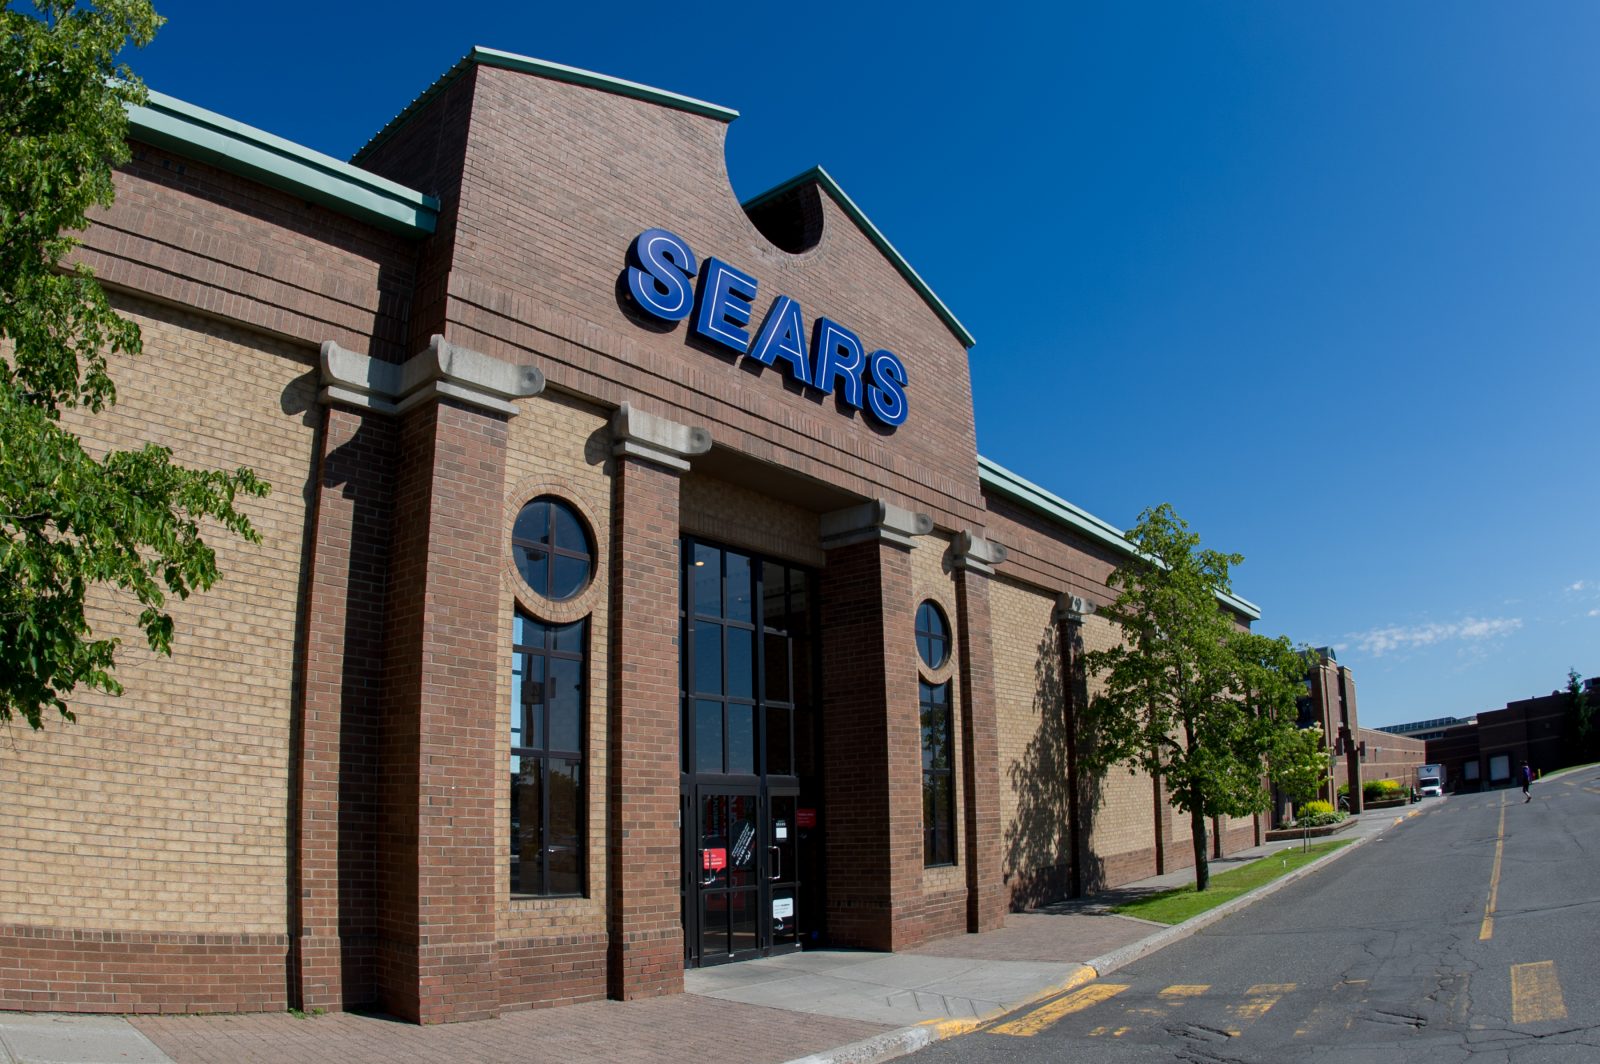 Qui occupera le local vacant du Sears ?